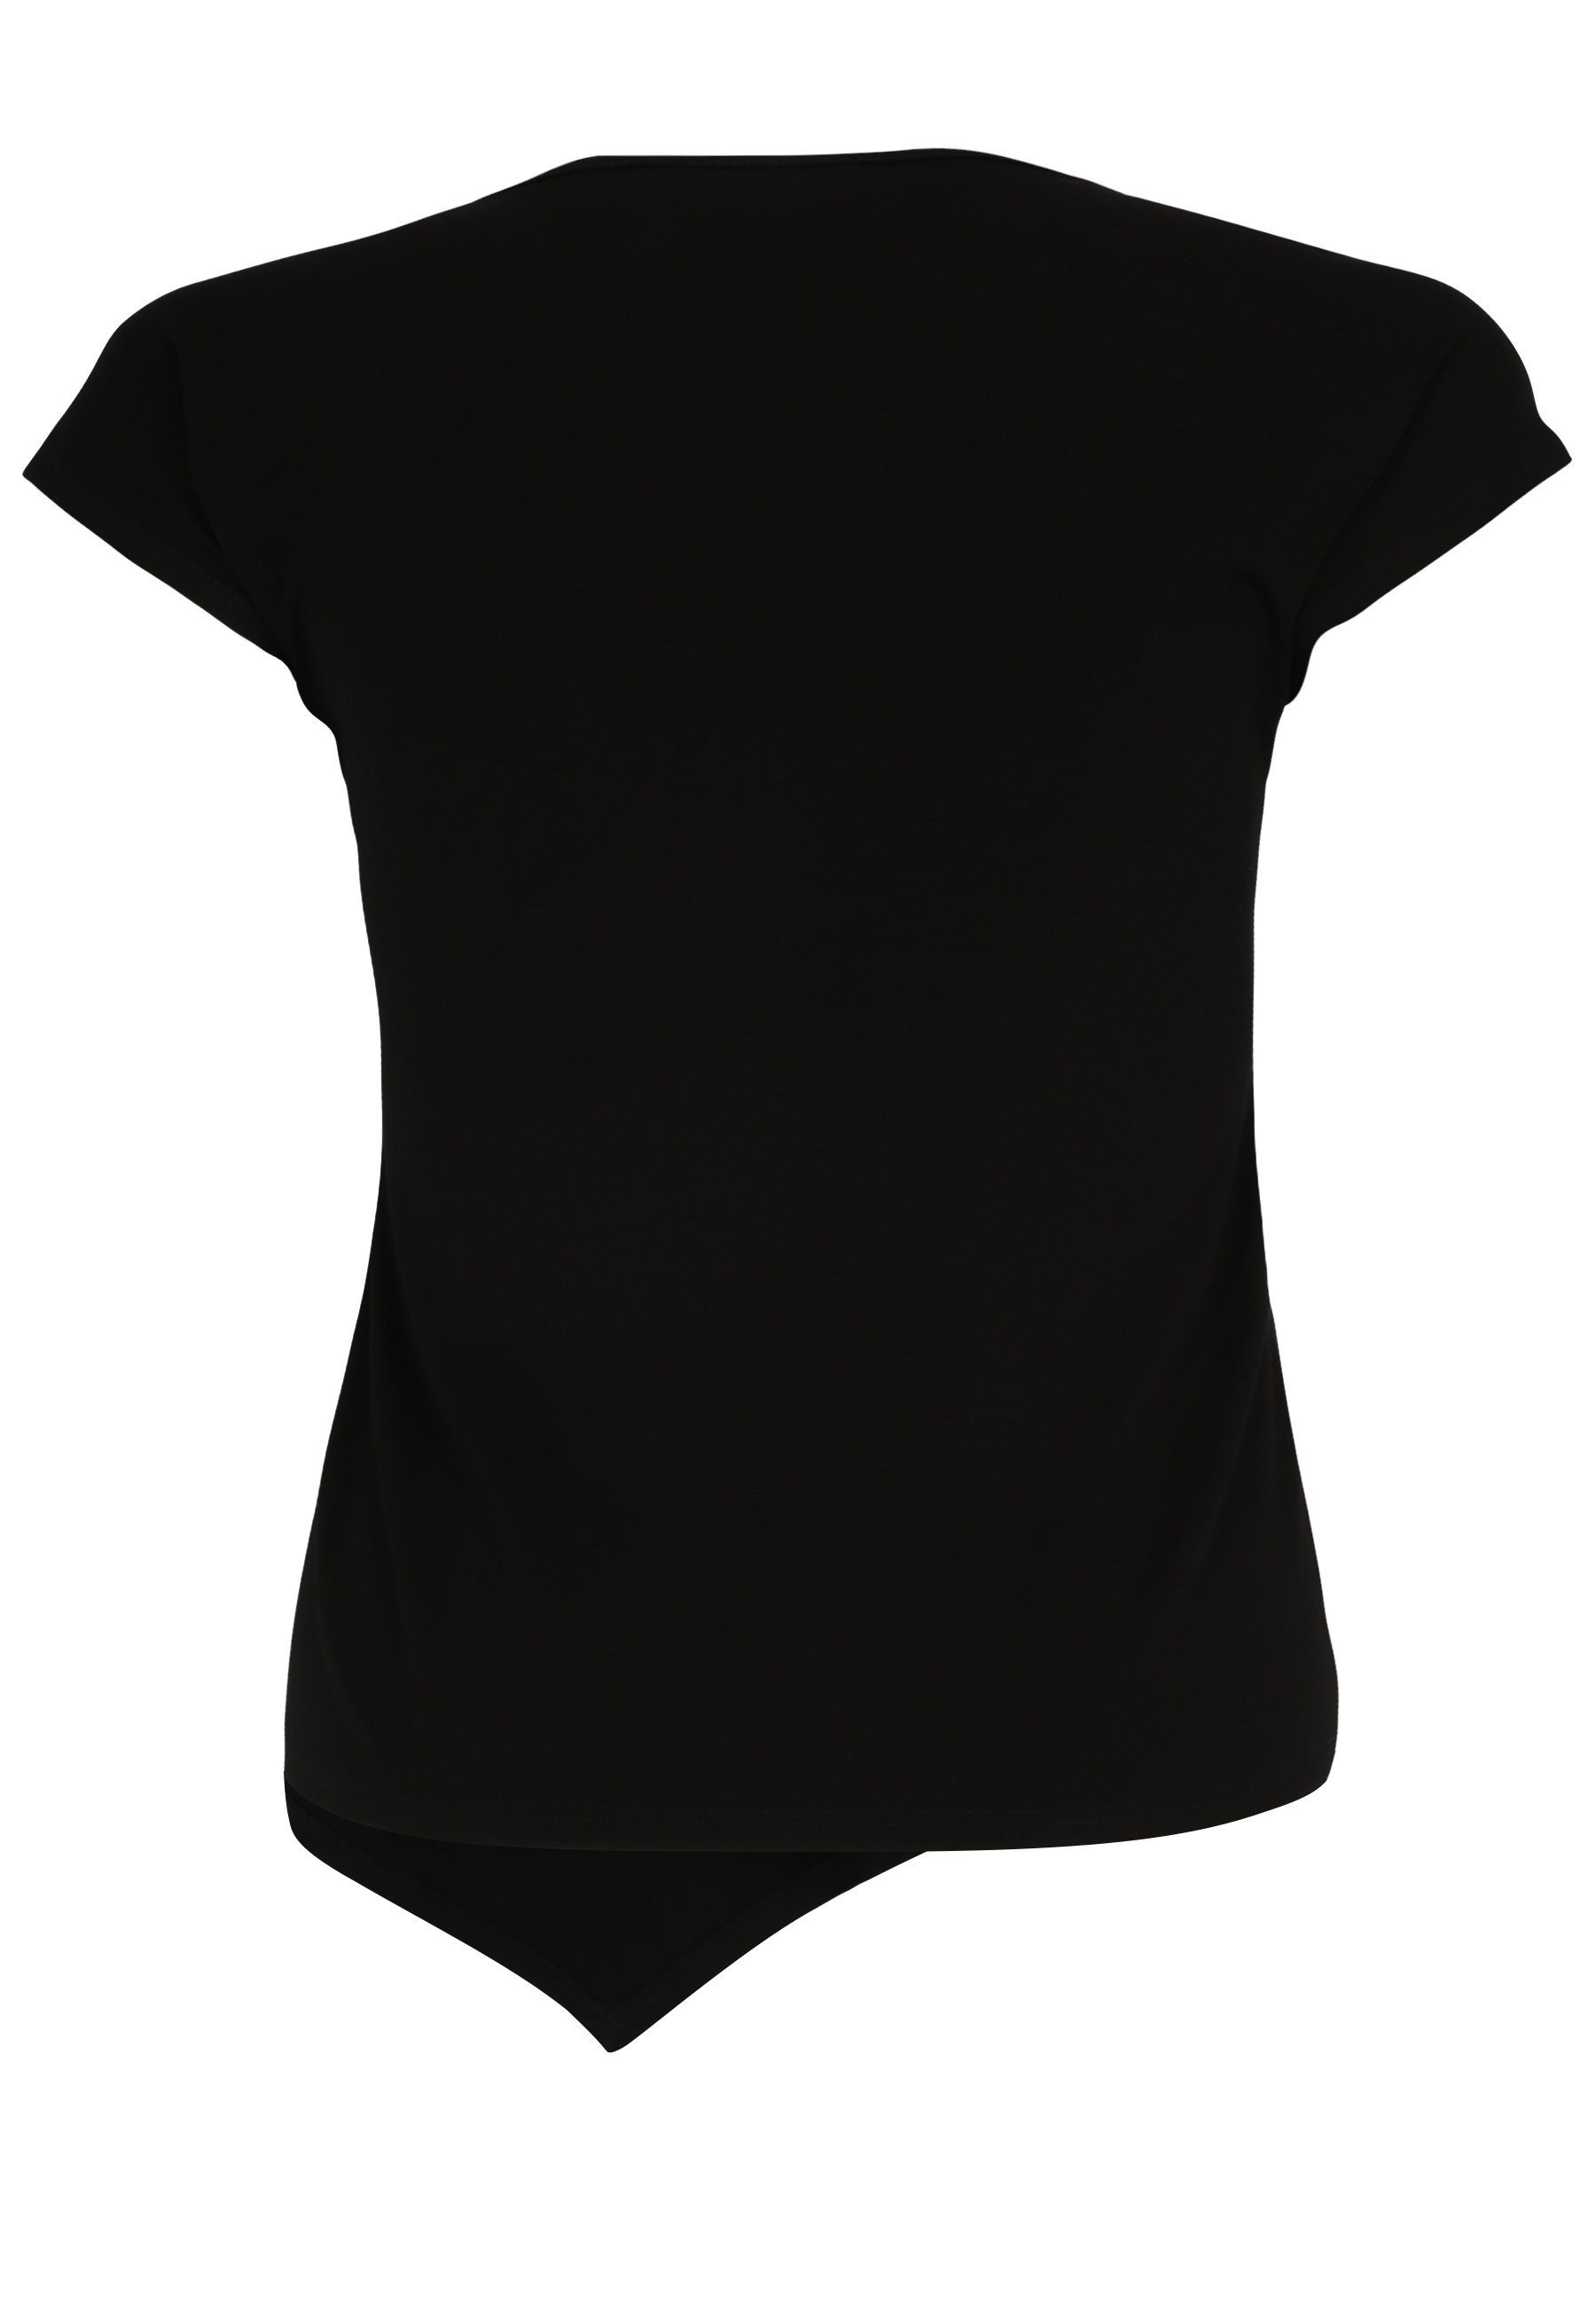 Streich Doris Design mit mit T-Shirt modernem T-Shirt Wording-Motiv